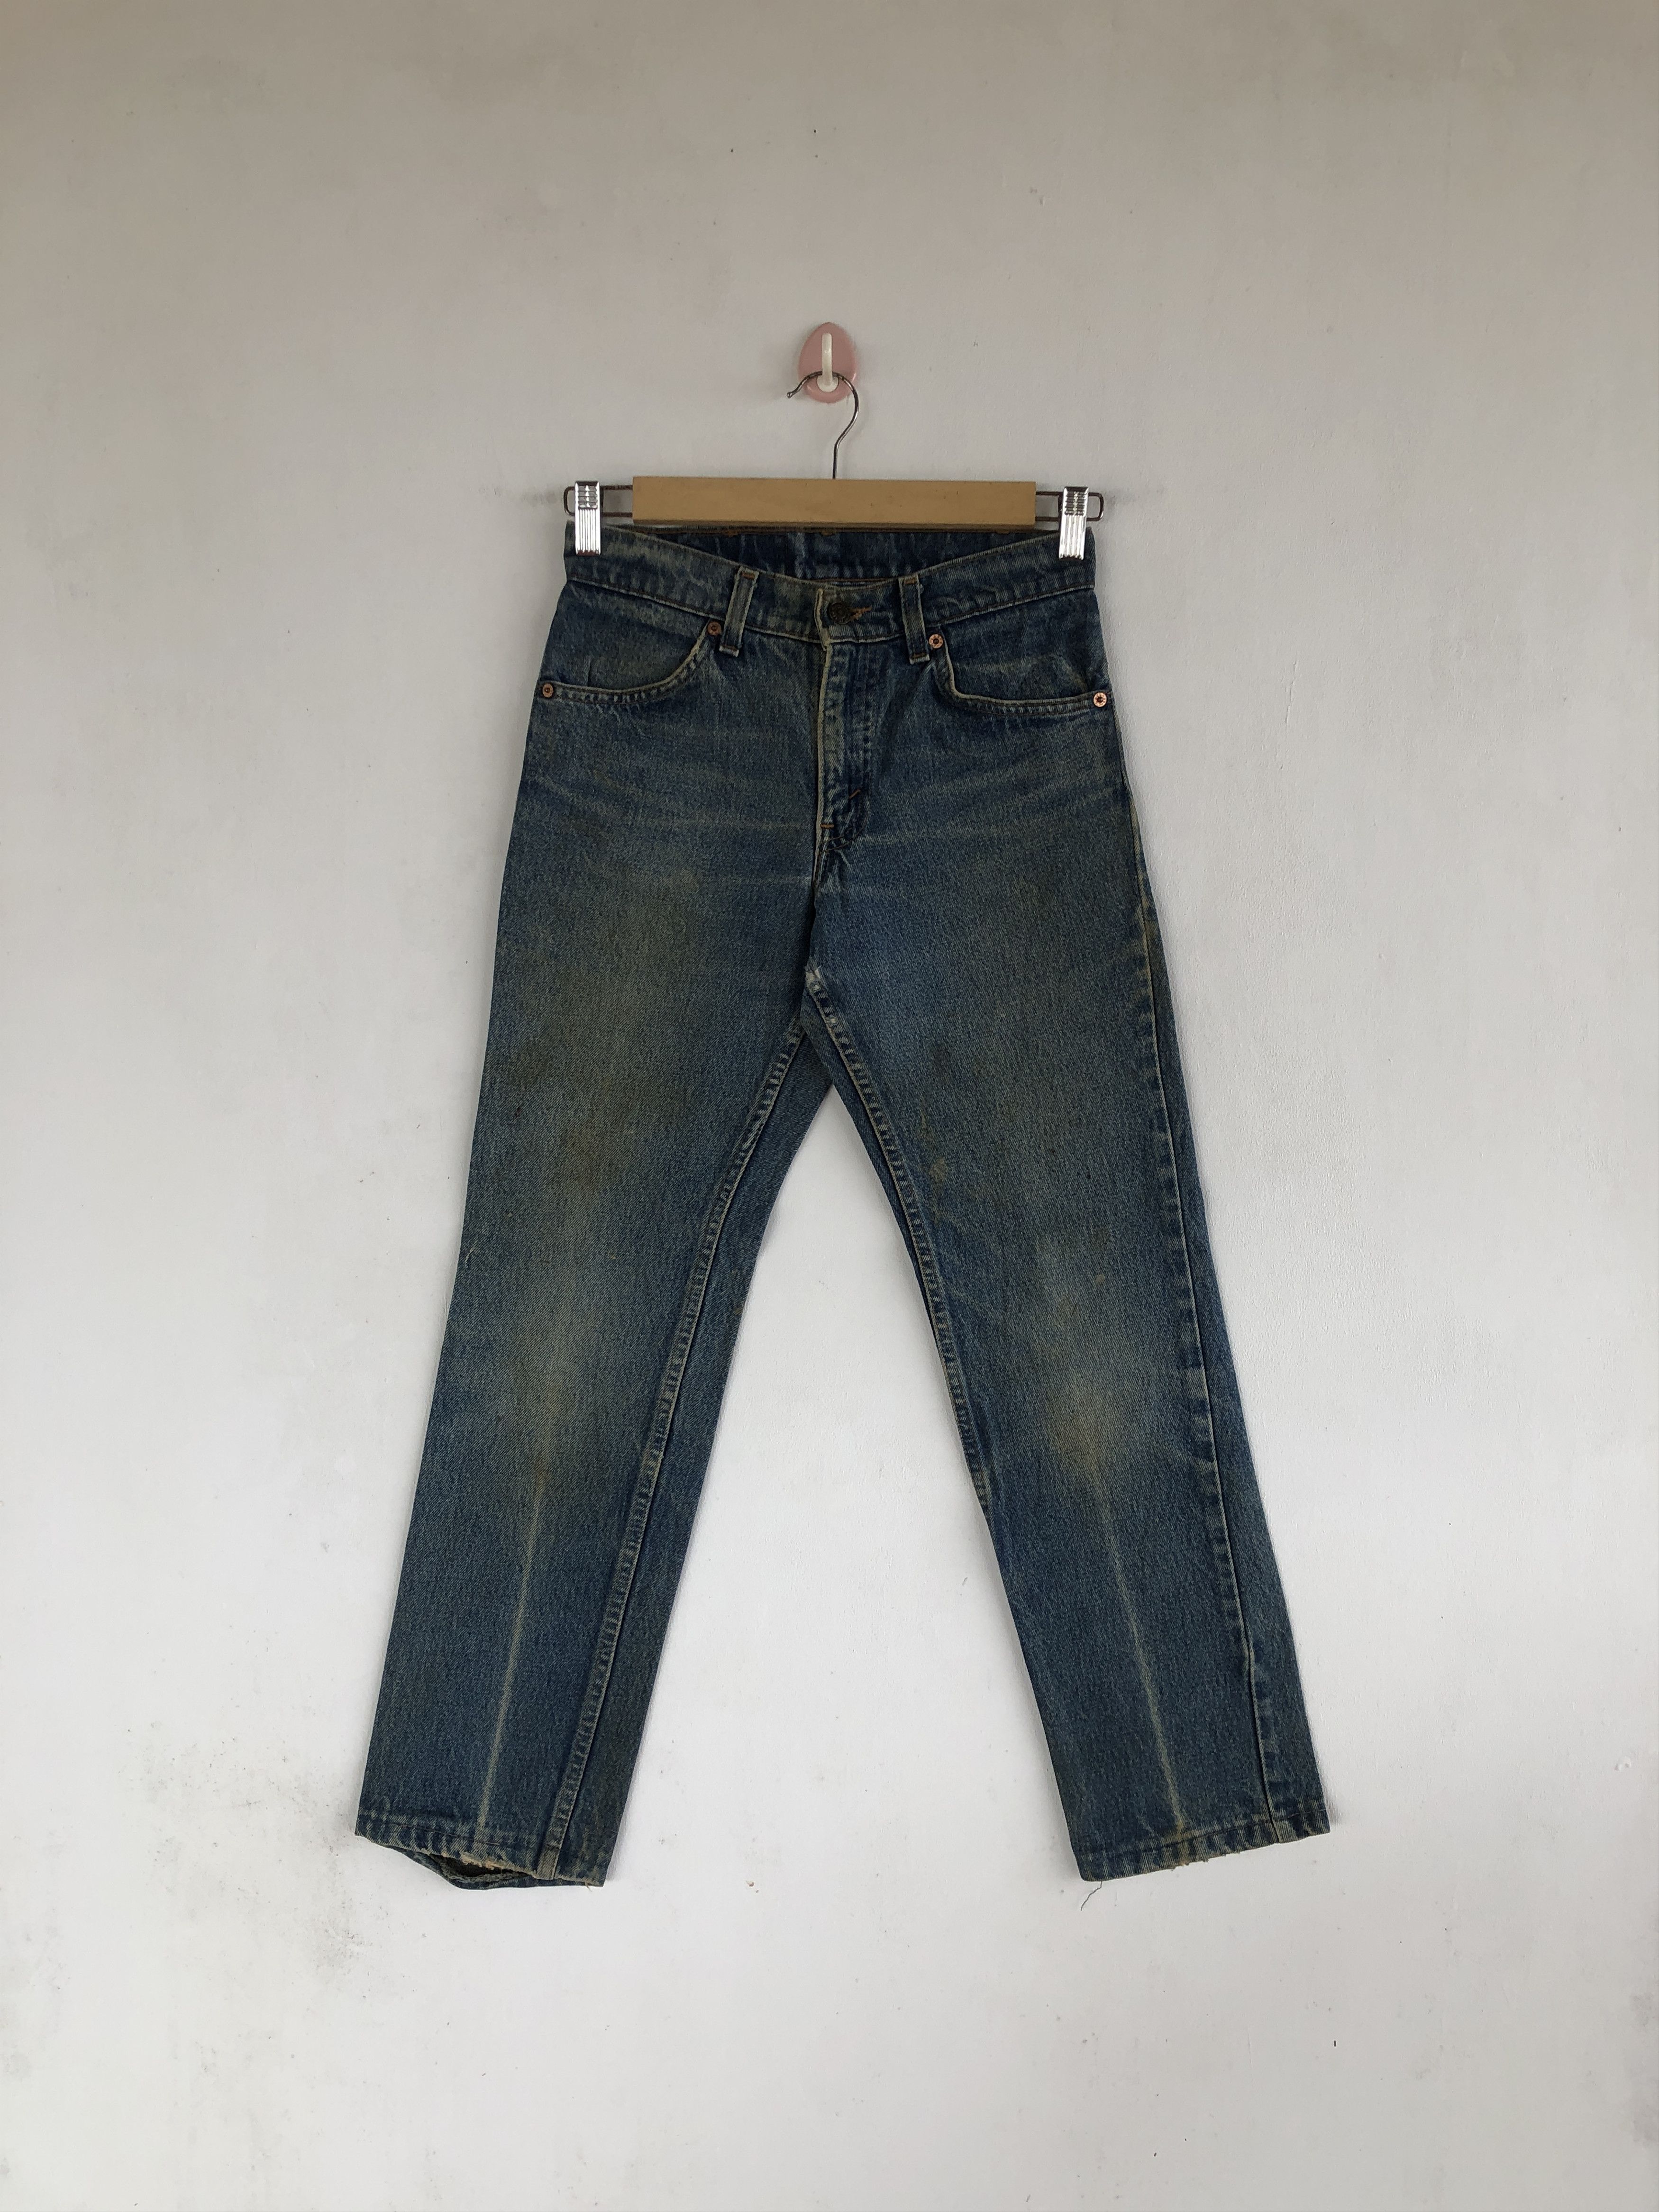 Vintage Vintage Levi's Jeans Orange Tab Levis Denim Levis 506 Pants ...